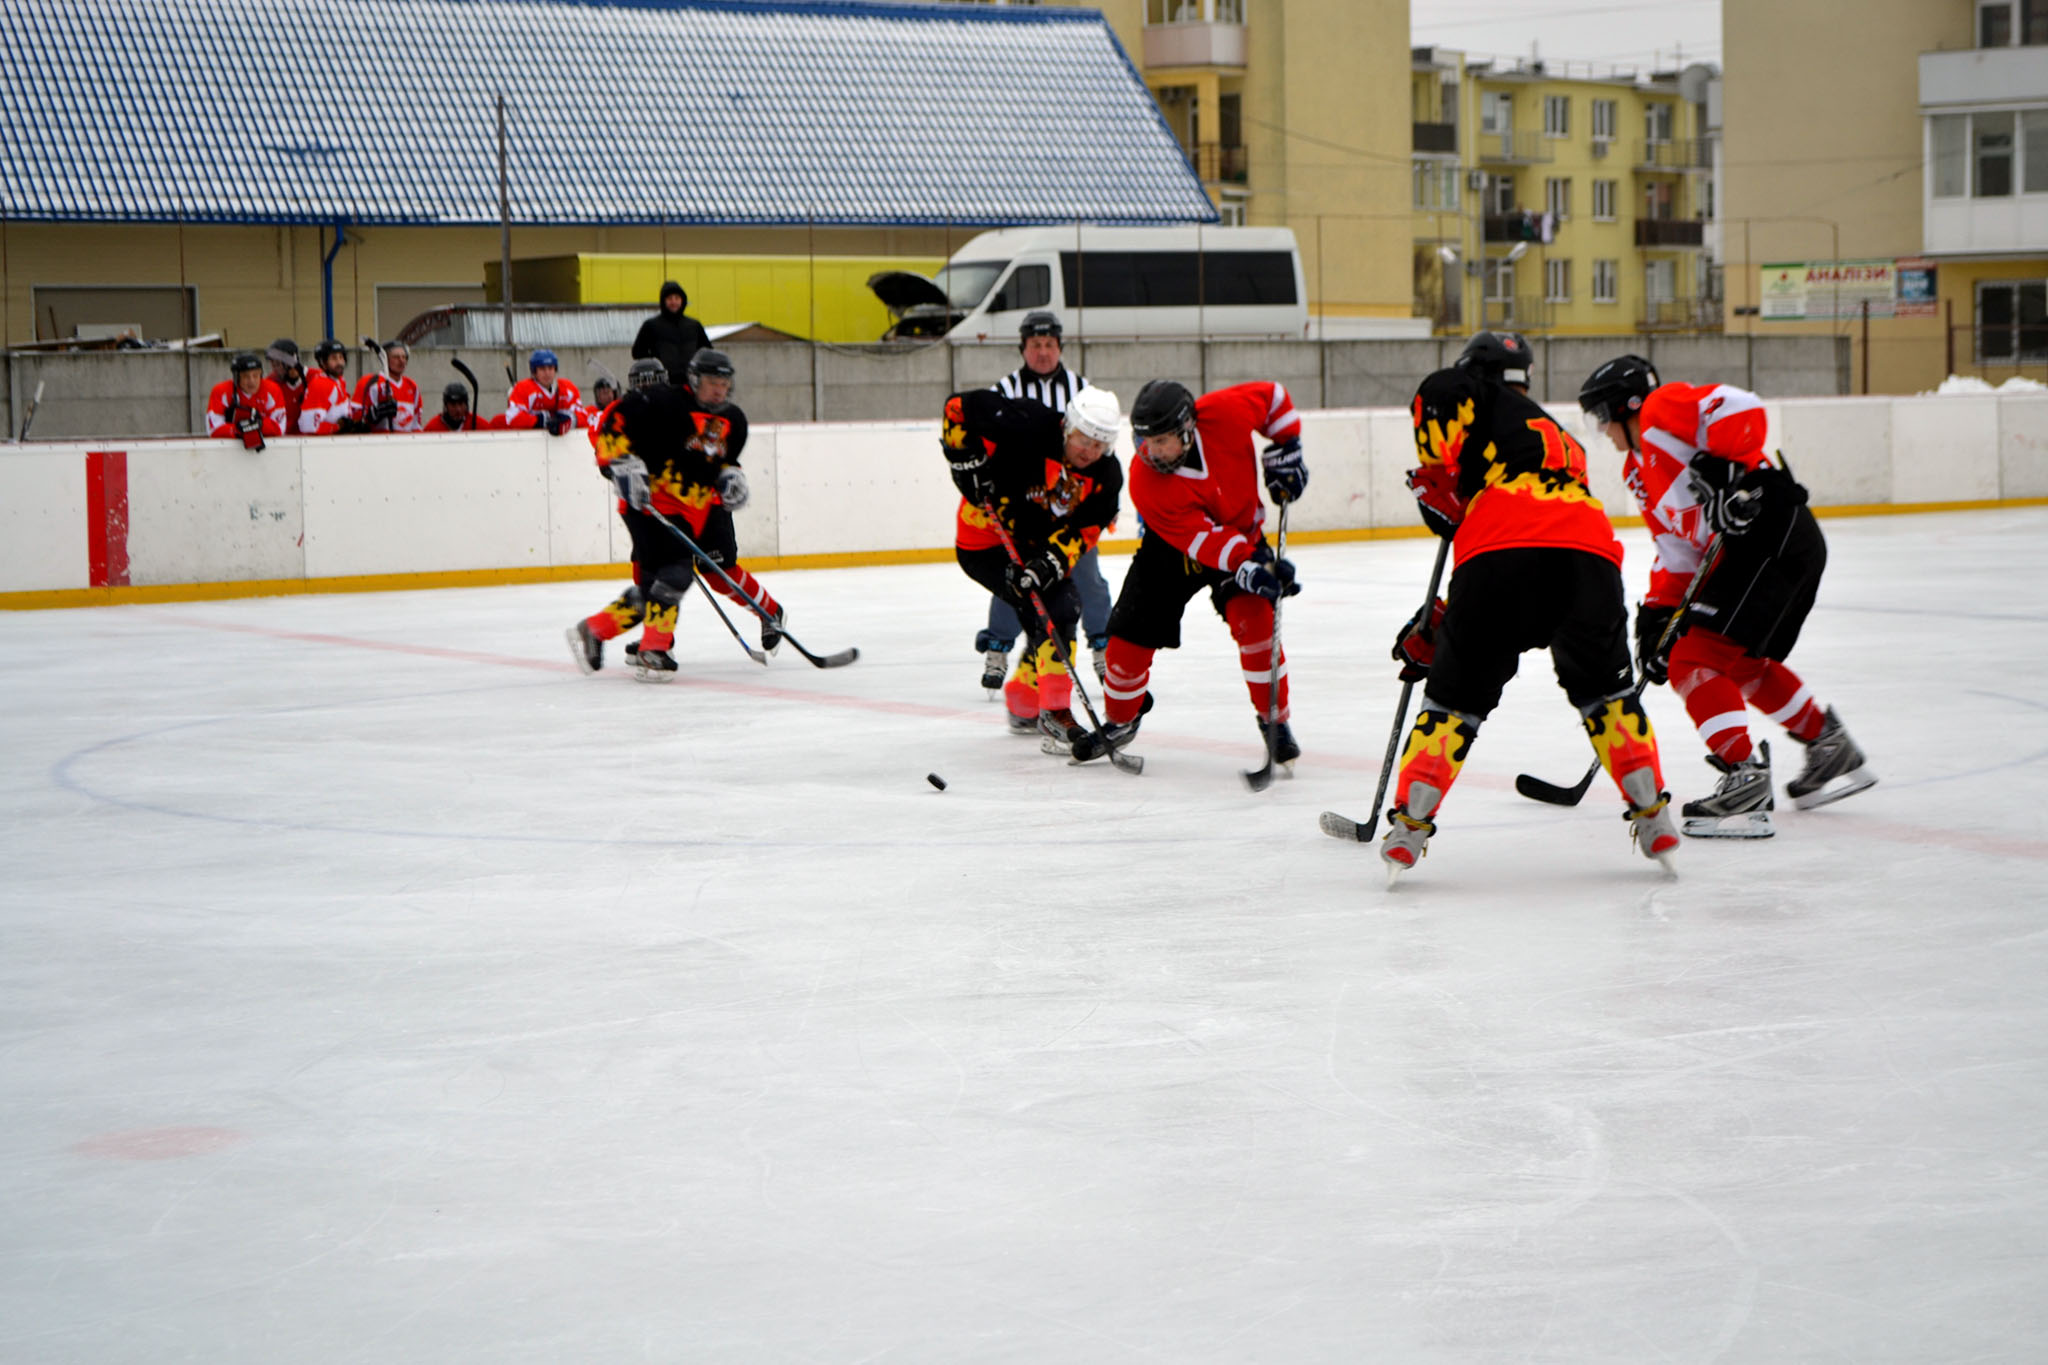 В эти выходные состоялись очередные хоккейные поединки на льду. Противостояние продолжалось между «Ужгородскими волками» и «Синевир», а также между командами «Спартак» и «Шахтерские Барсы».